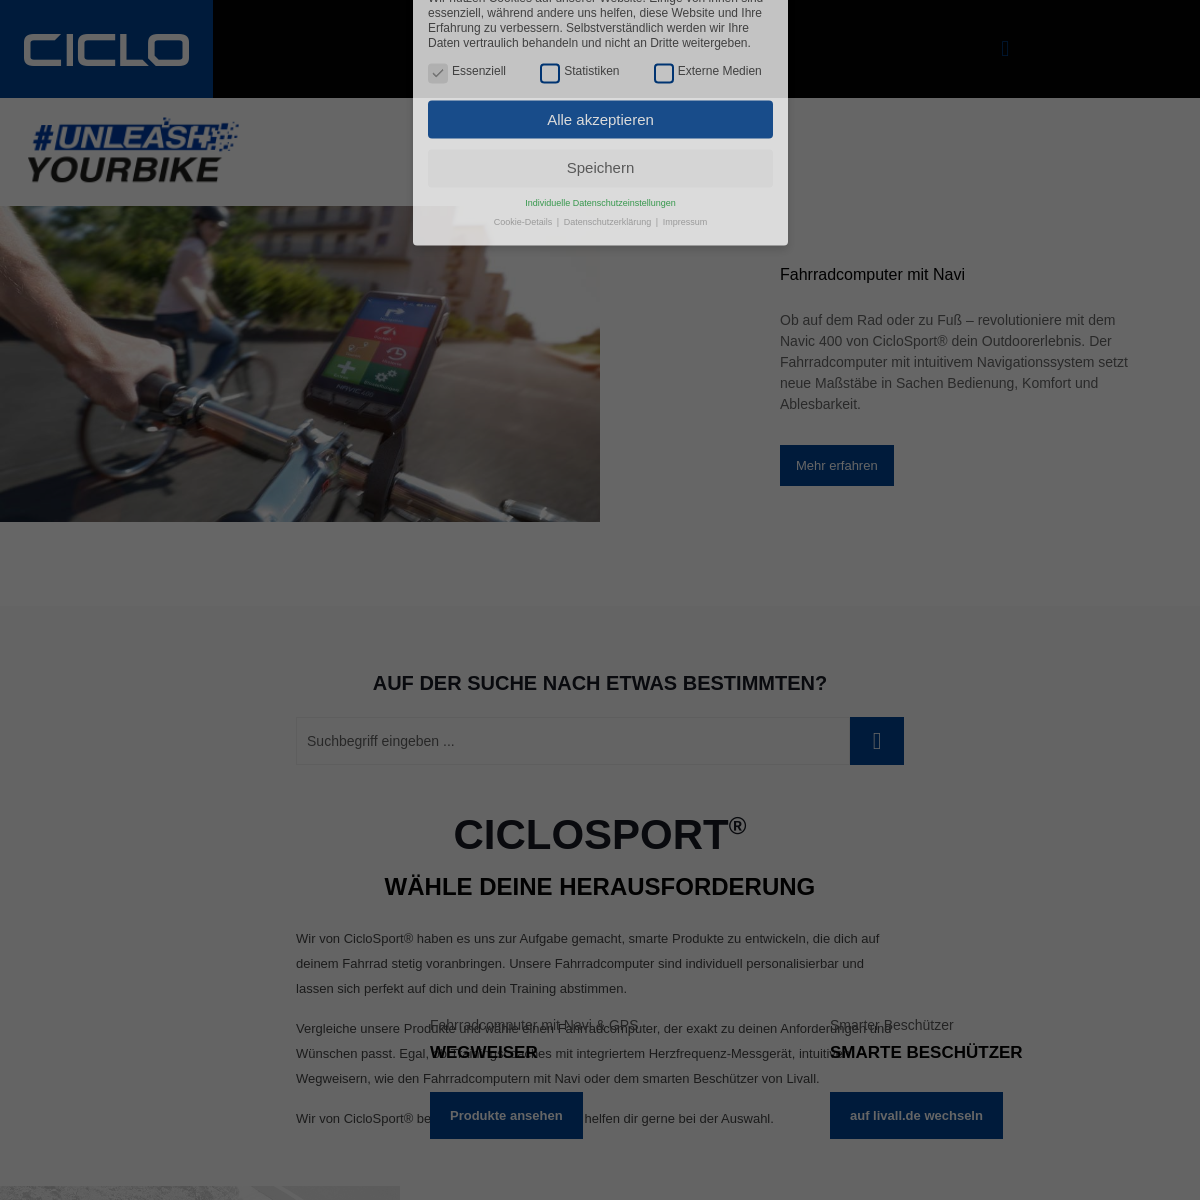 A complete backup of ciclosport.de